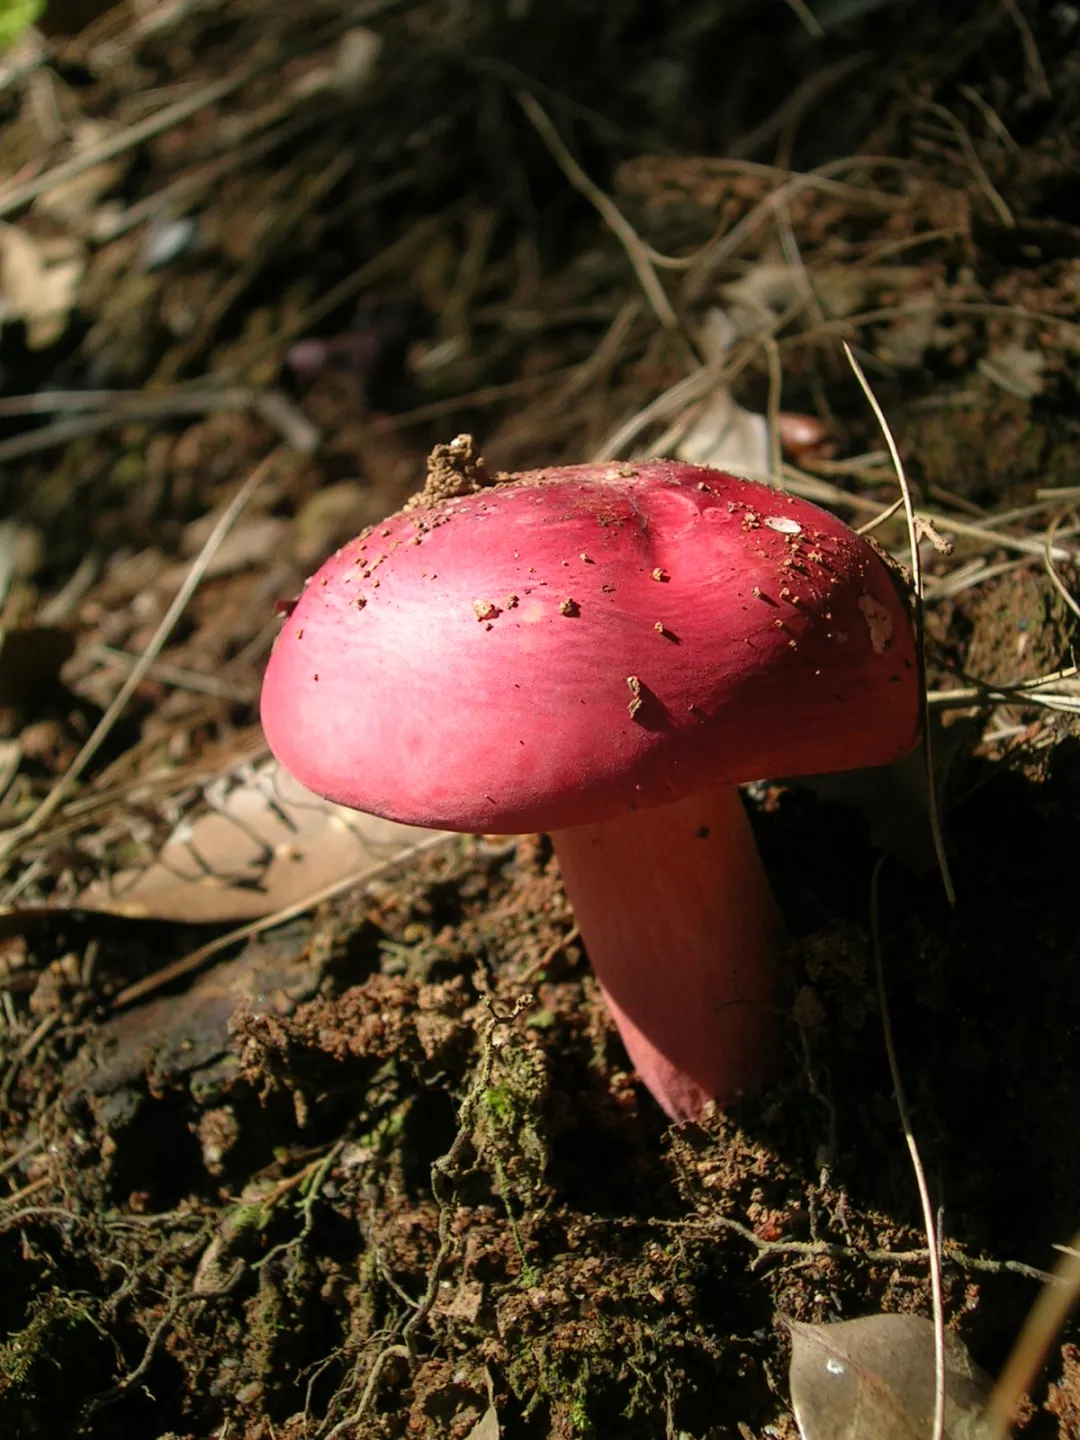 号称菇中之王的红菇,正在成为野生菌市场中的新贵